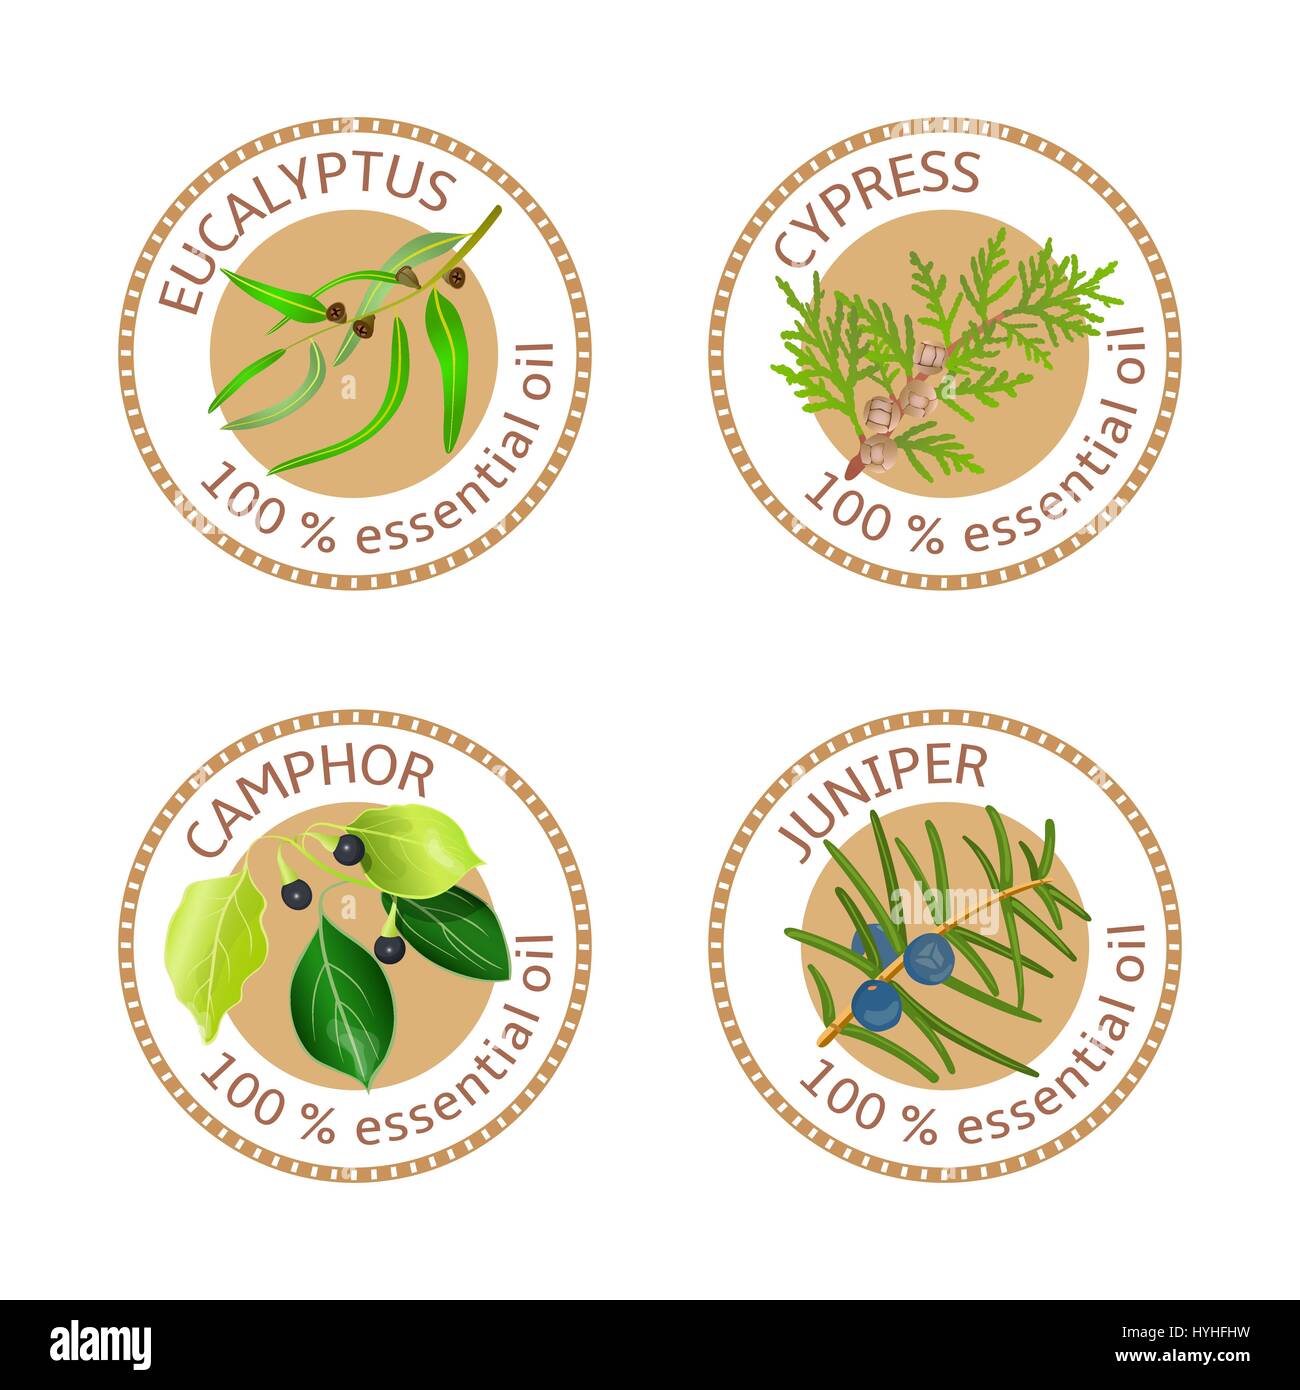 Set of essential oils labels. Eucalyptus, cypress, camphor, juniper Stock Vector